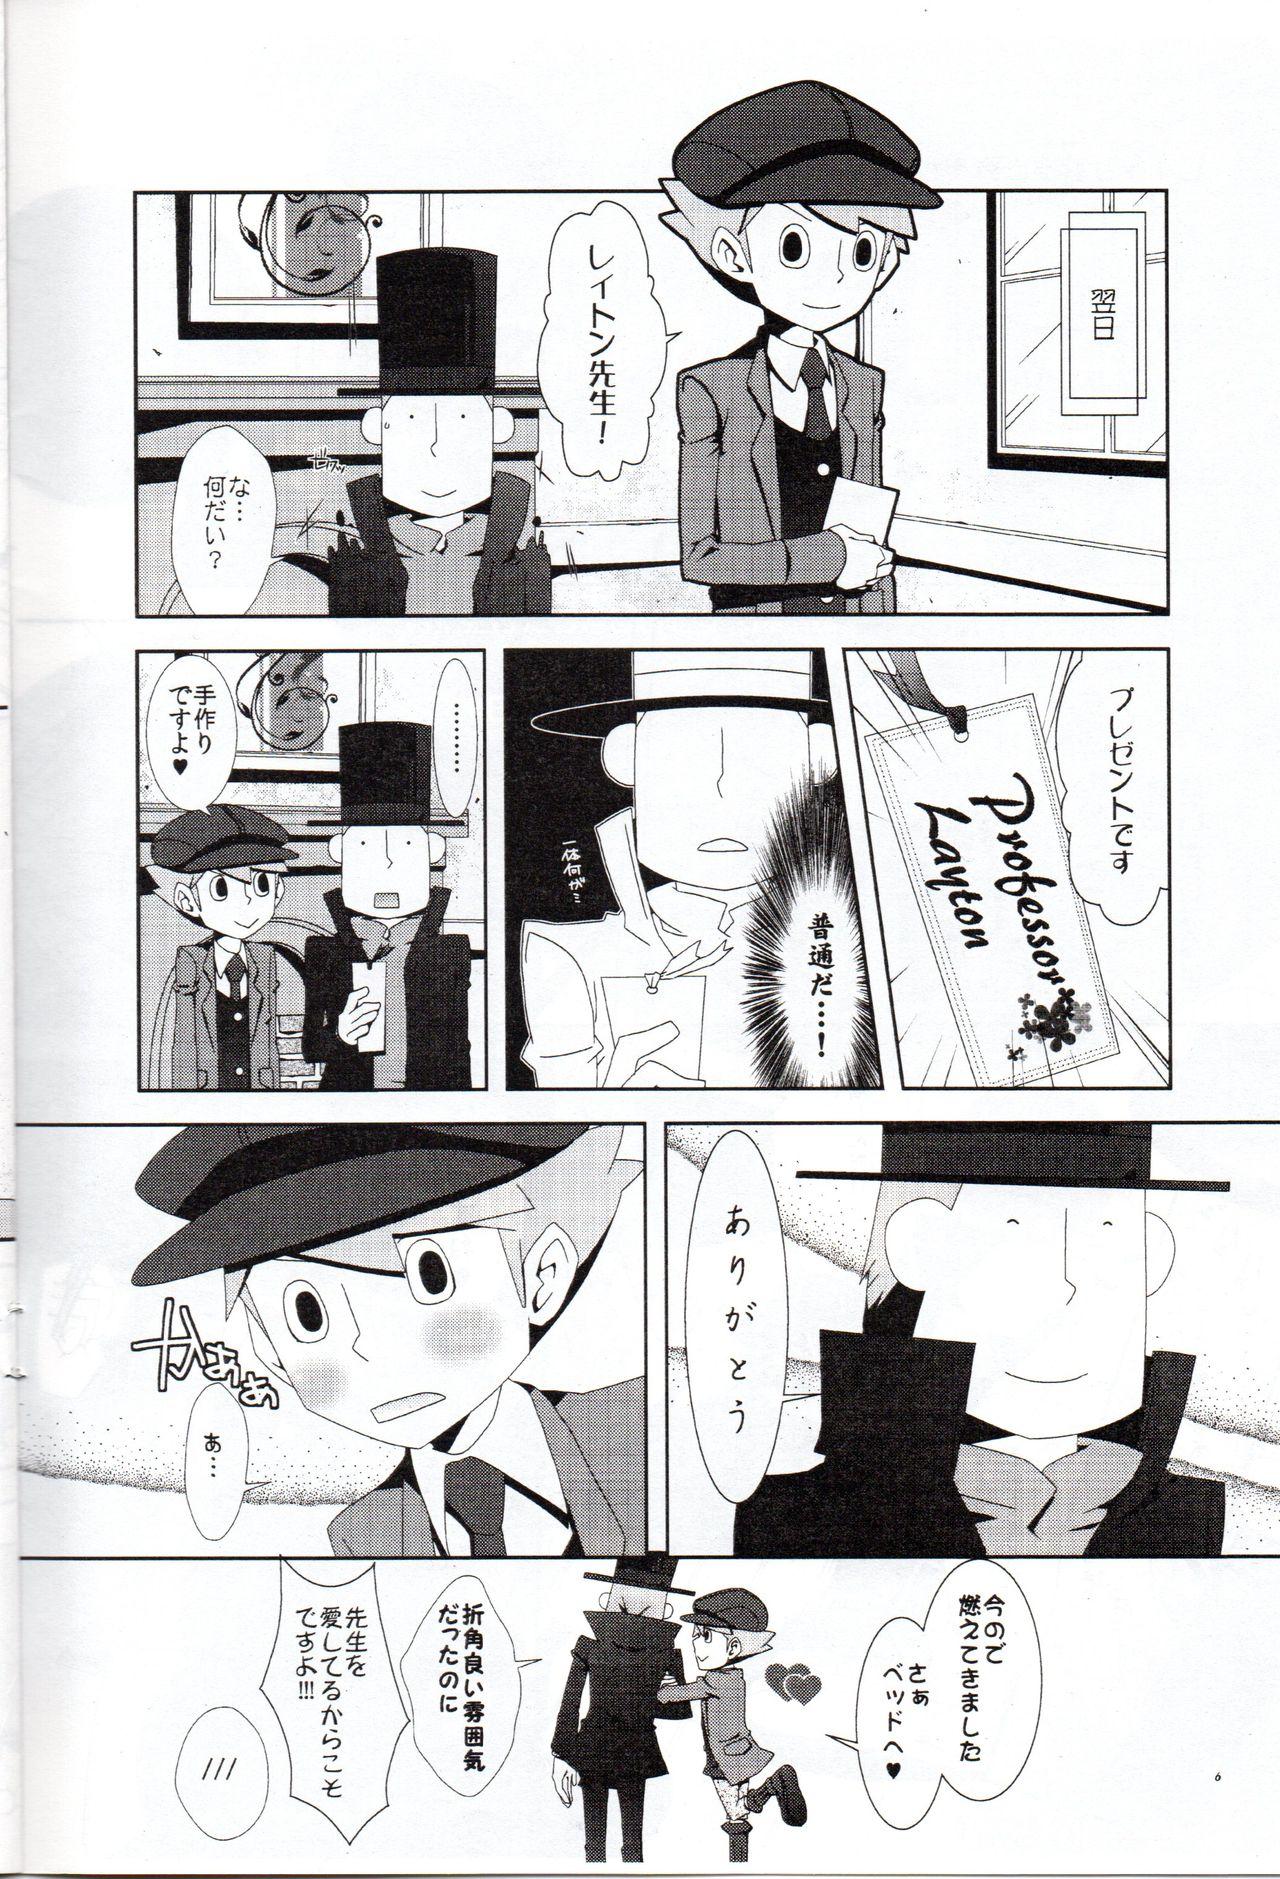 Camshow Layton Kyoujyu To Himitsu No Hanazono - Professor layton Mamadas - Page 7